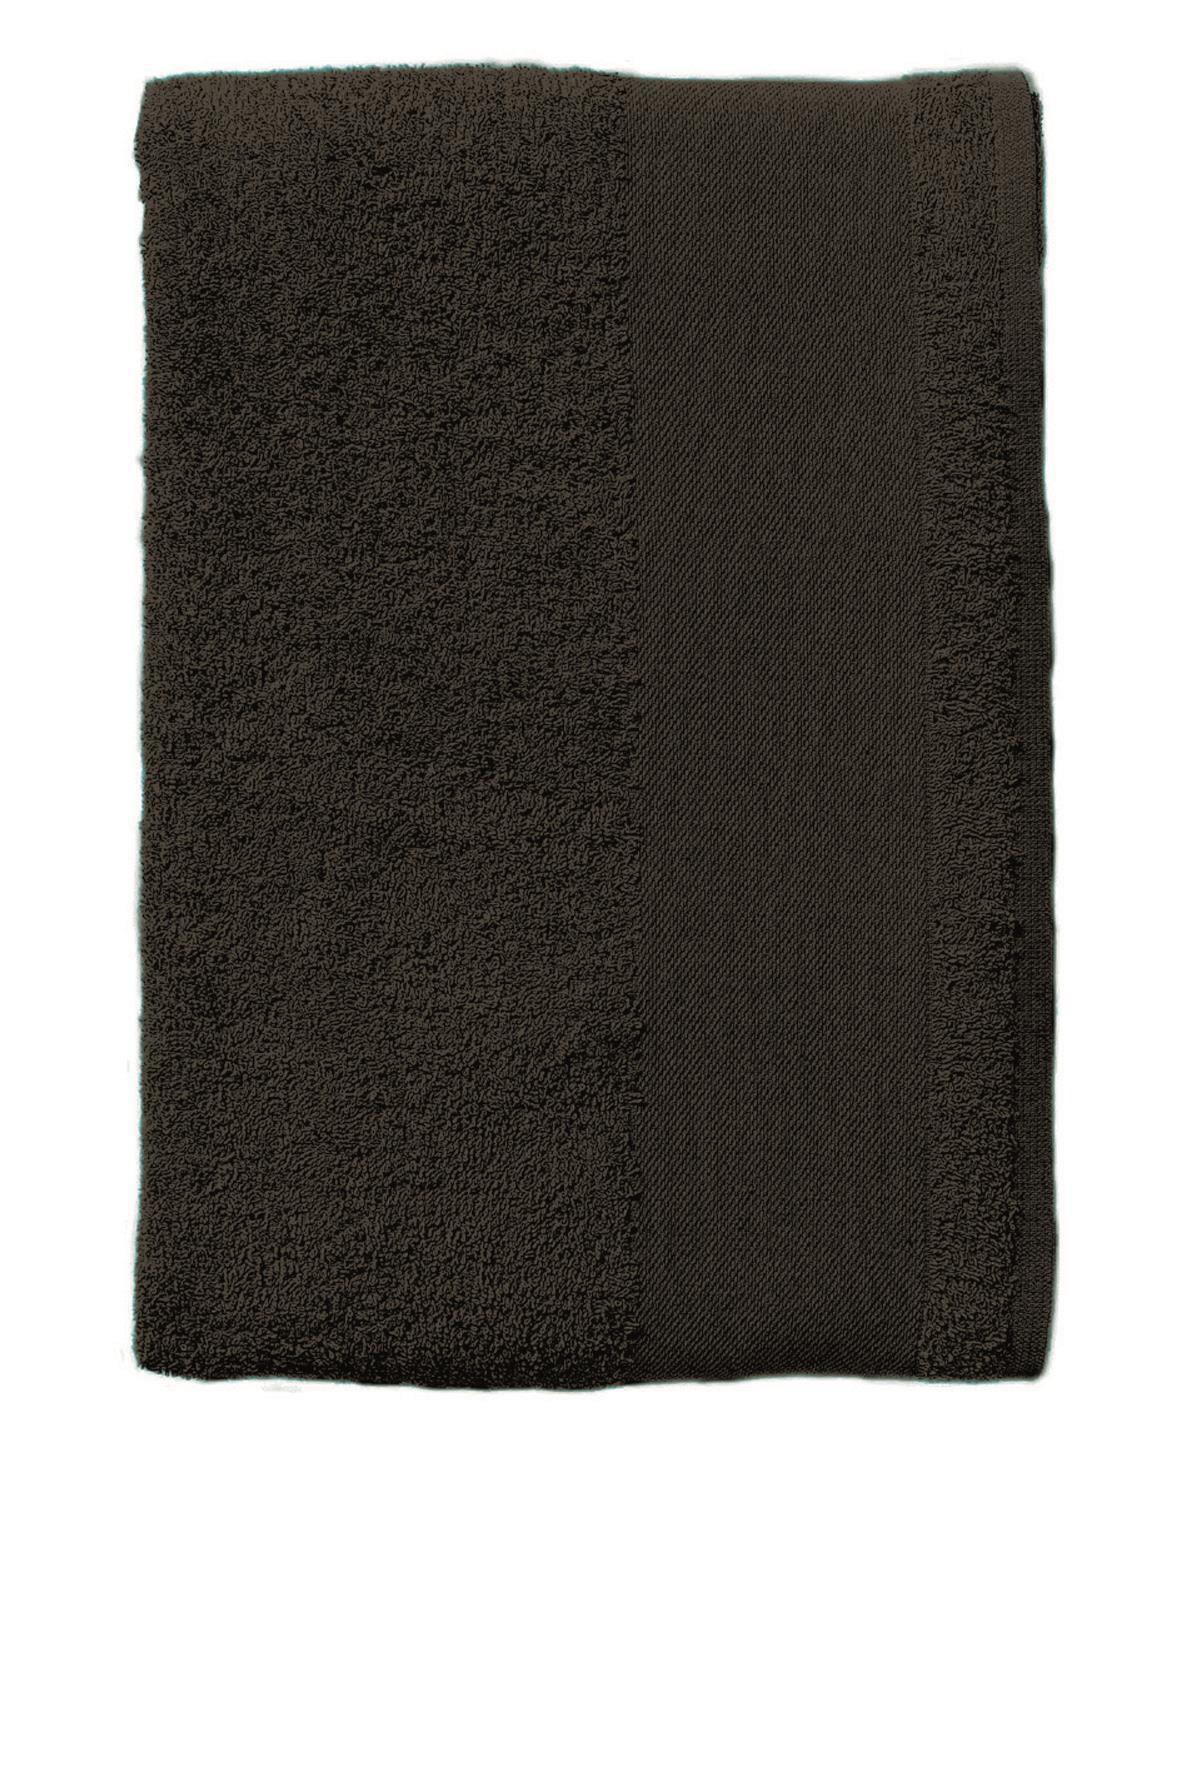 Handoeken zwart handdoek diverse maten strandlaken.